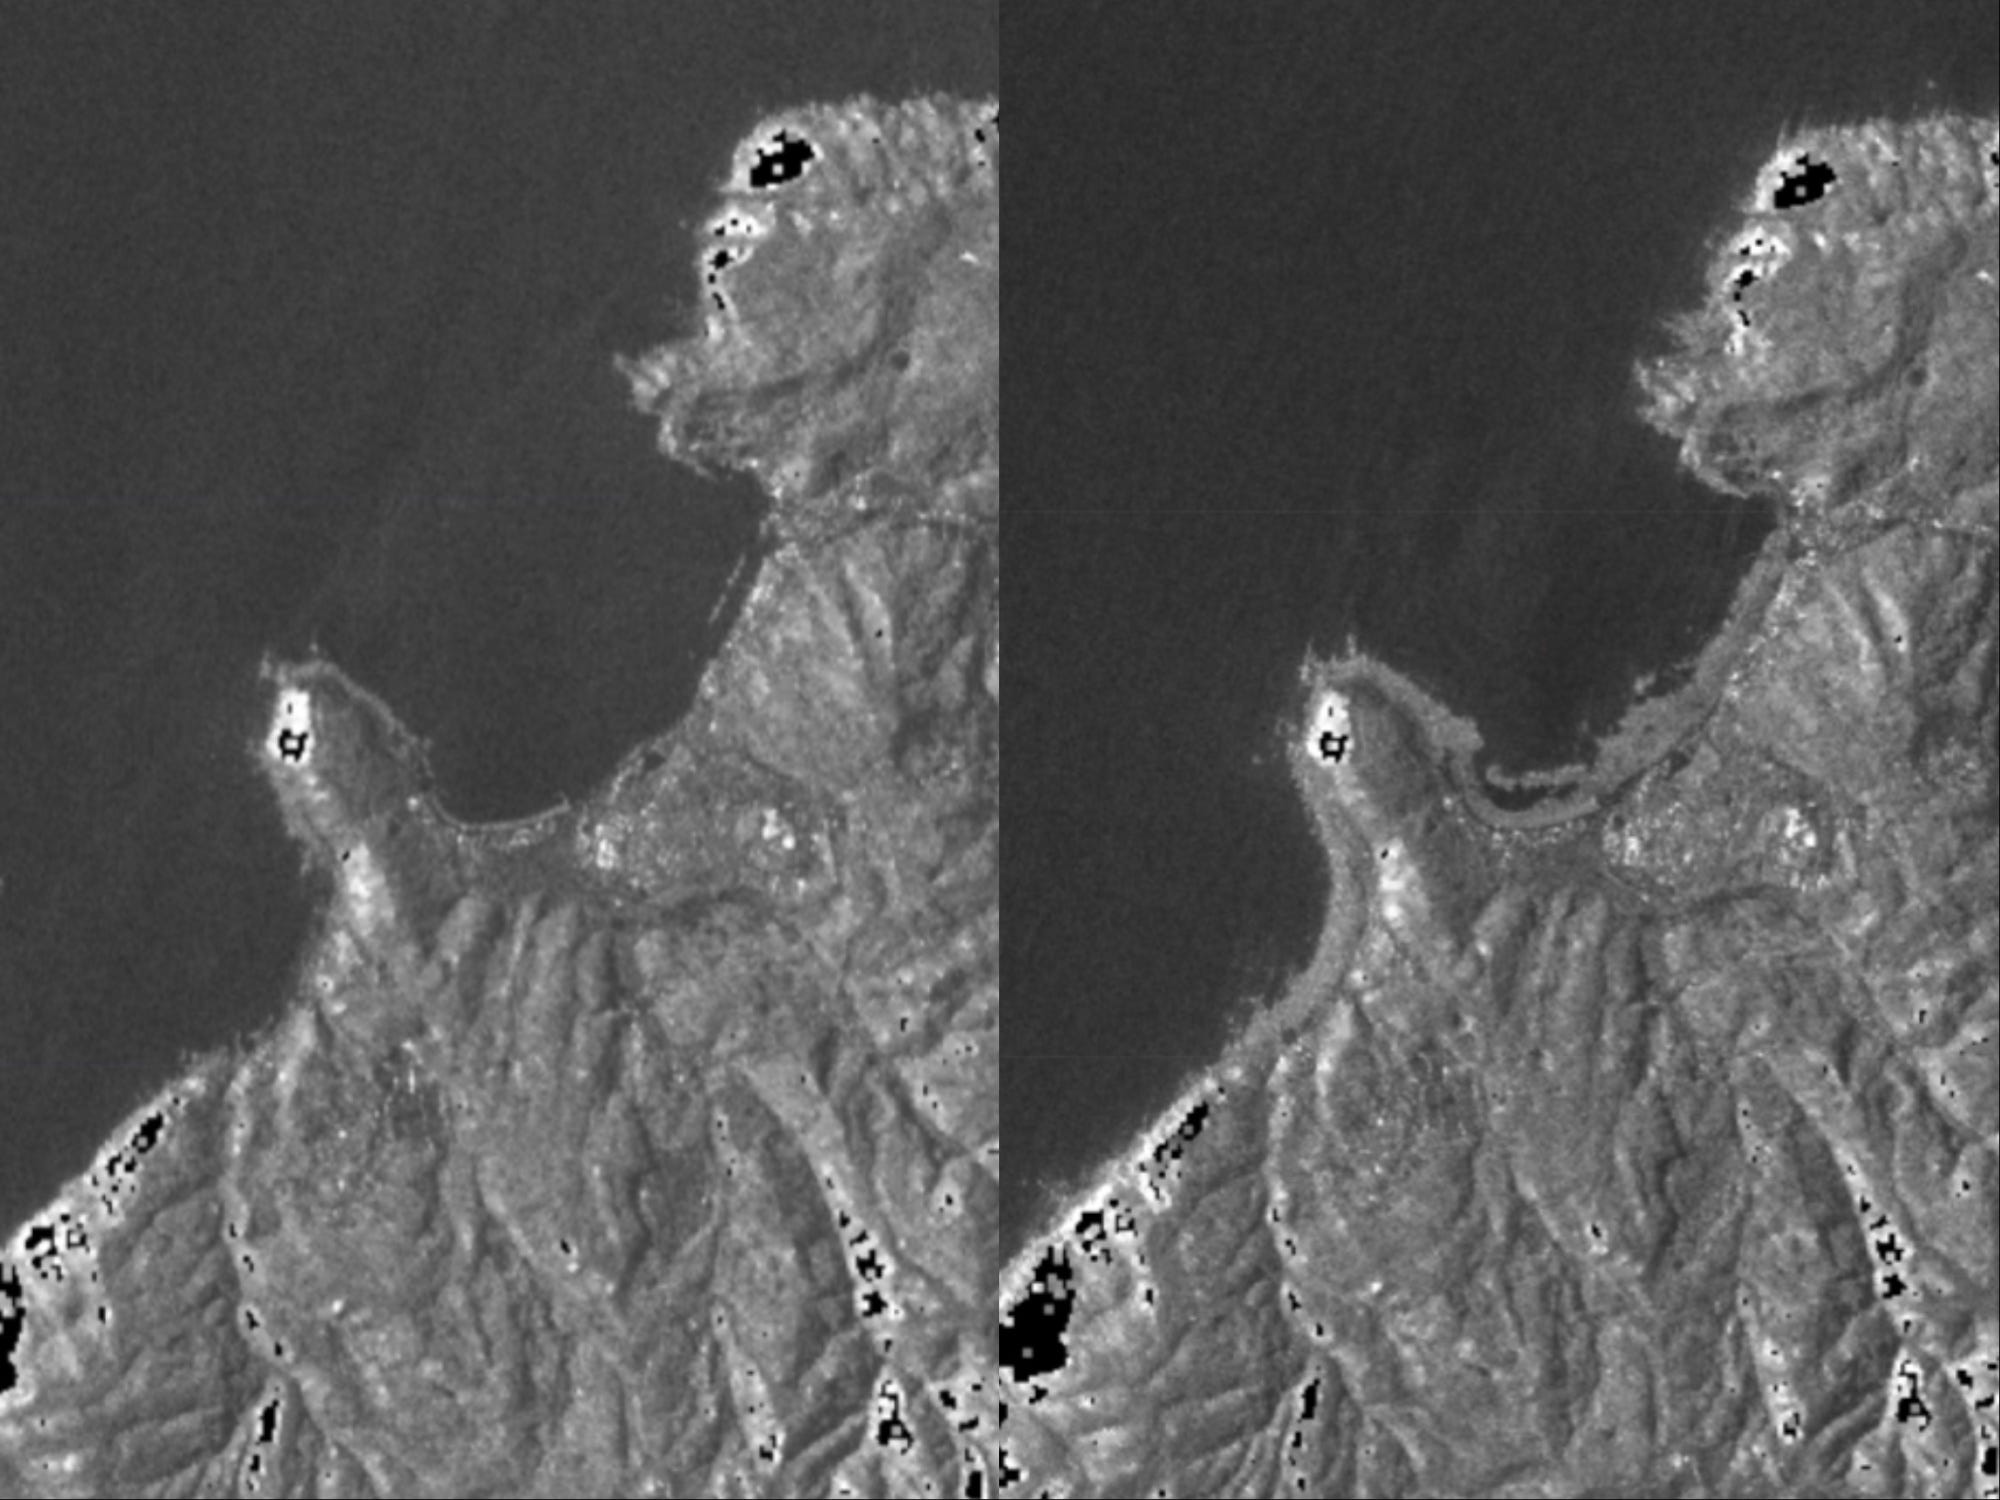 zwei Satellitenbilder derselben Küstenlinie vor und nach der Erhebung neuen Küstenlandes aus dem Ozean